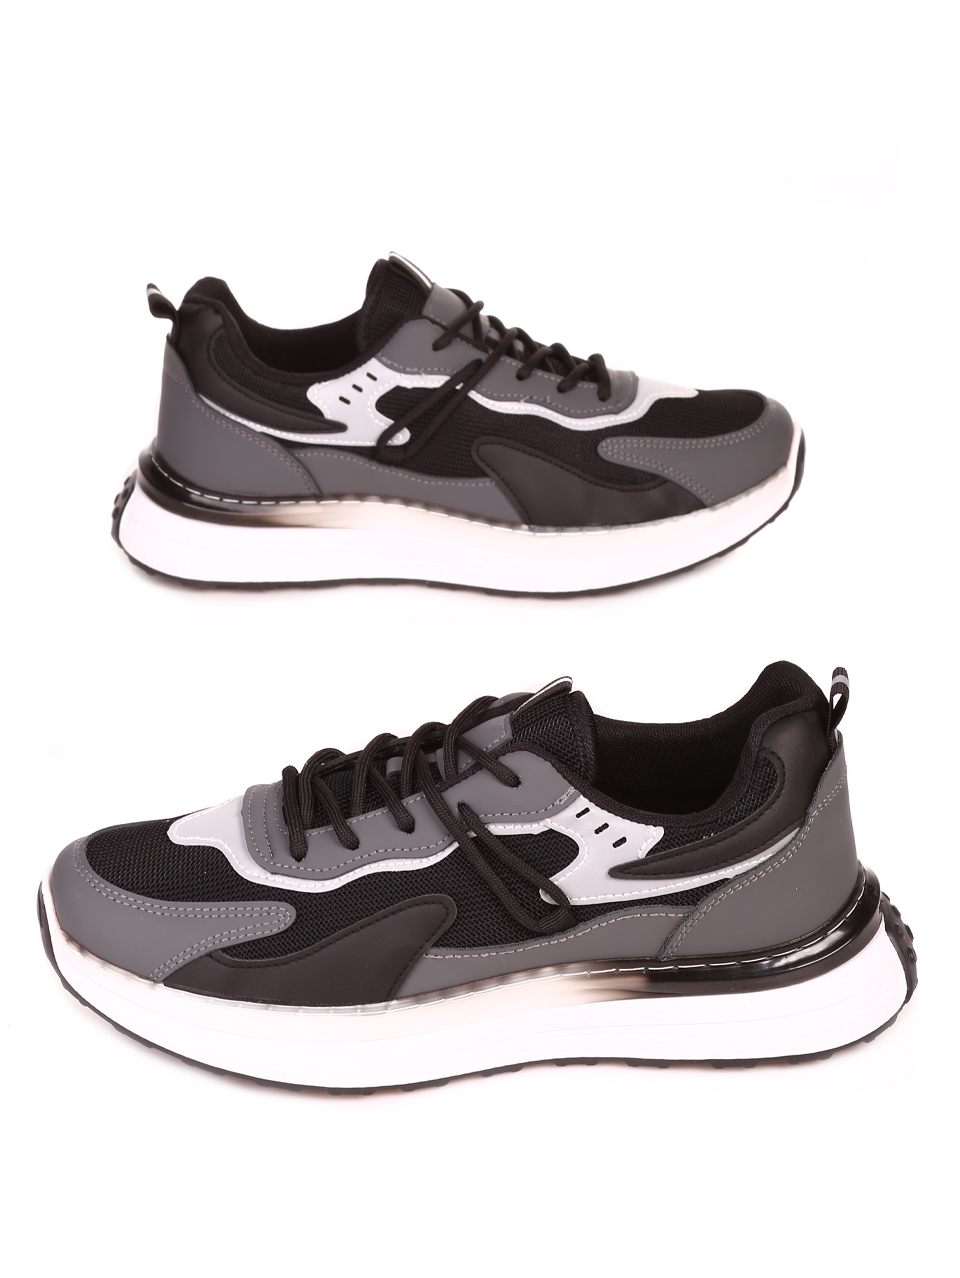 Ежедневни мъжки комфортни обувки в черно и сиво  7U-23573 black/grey